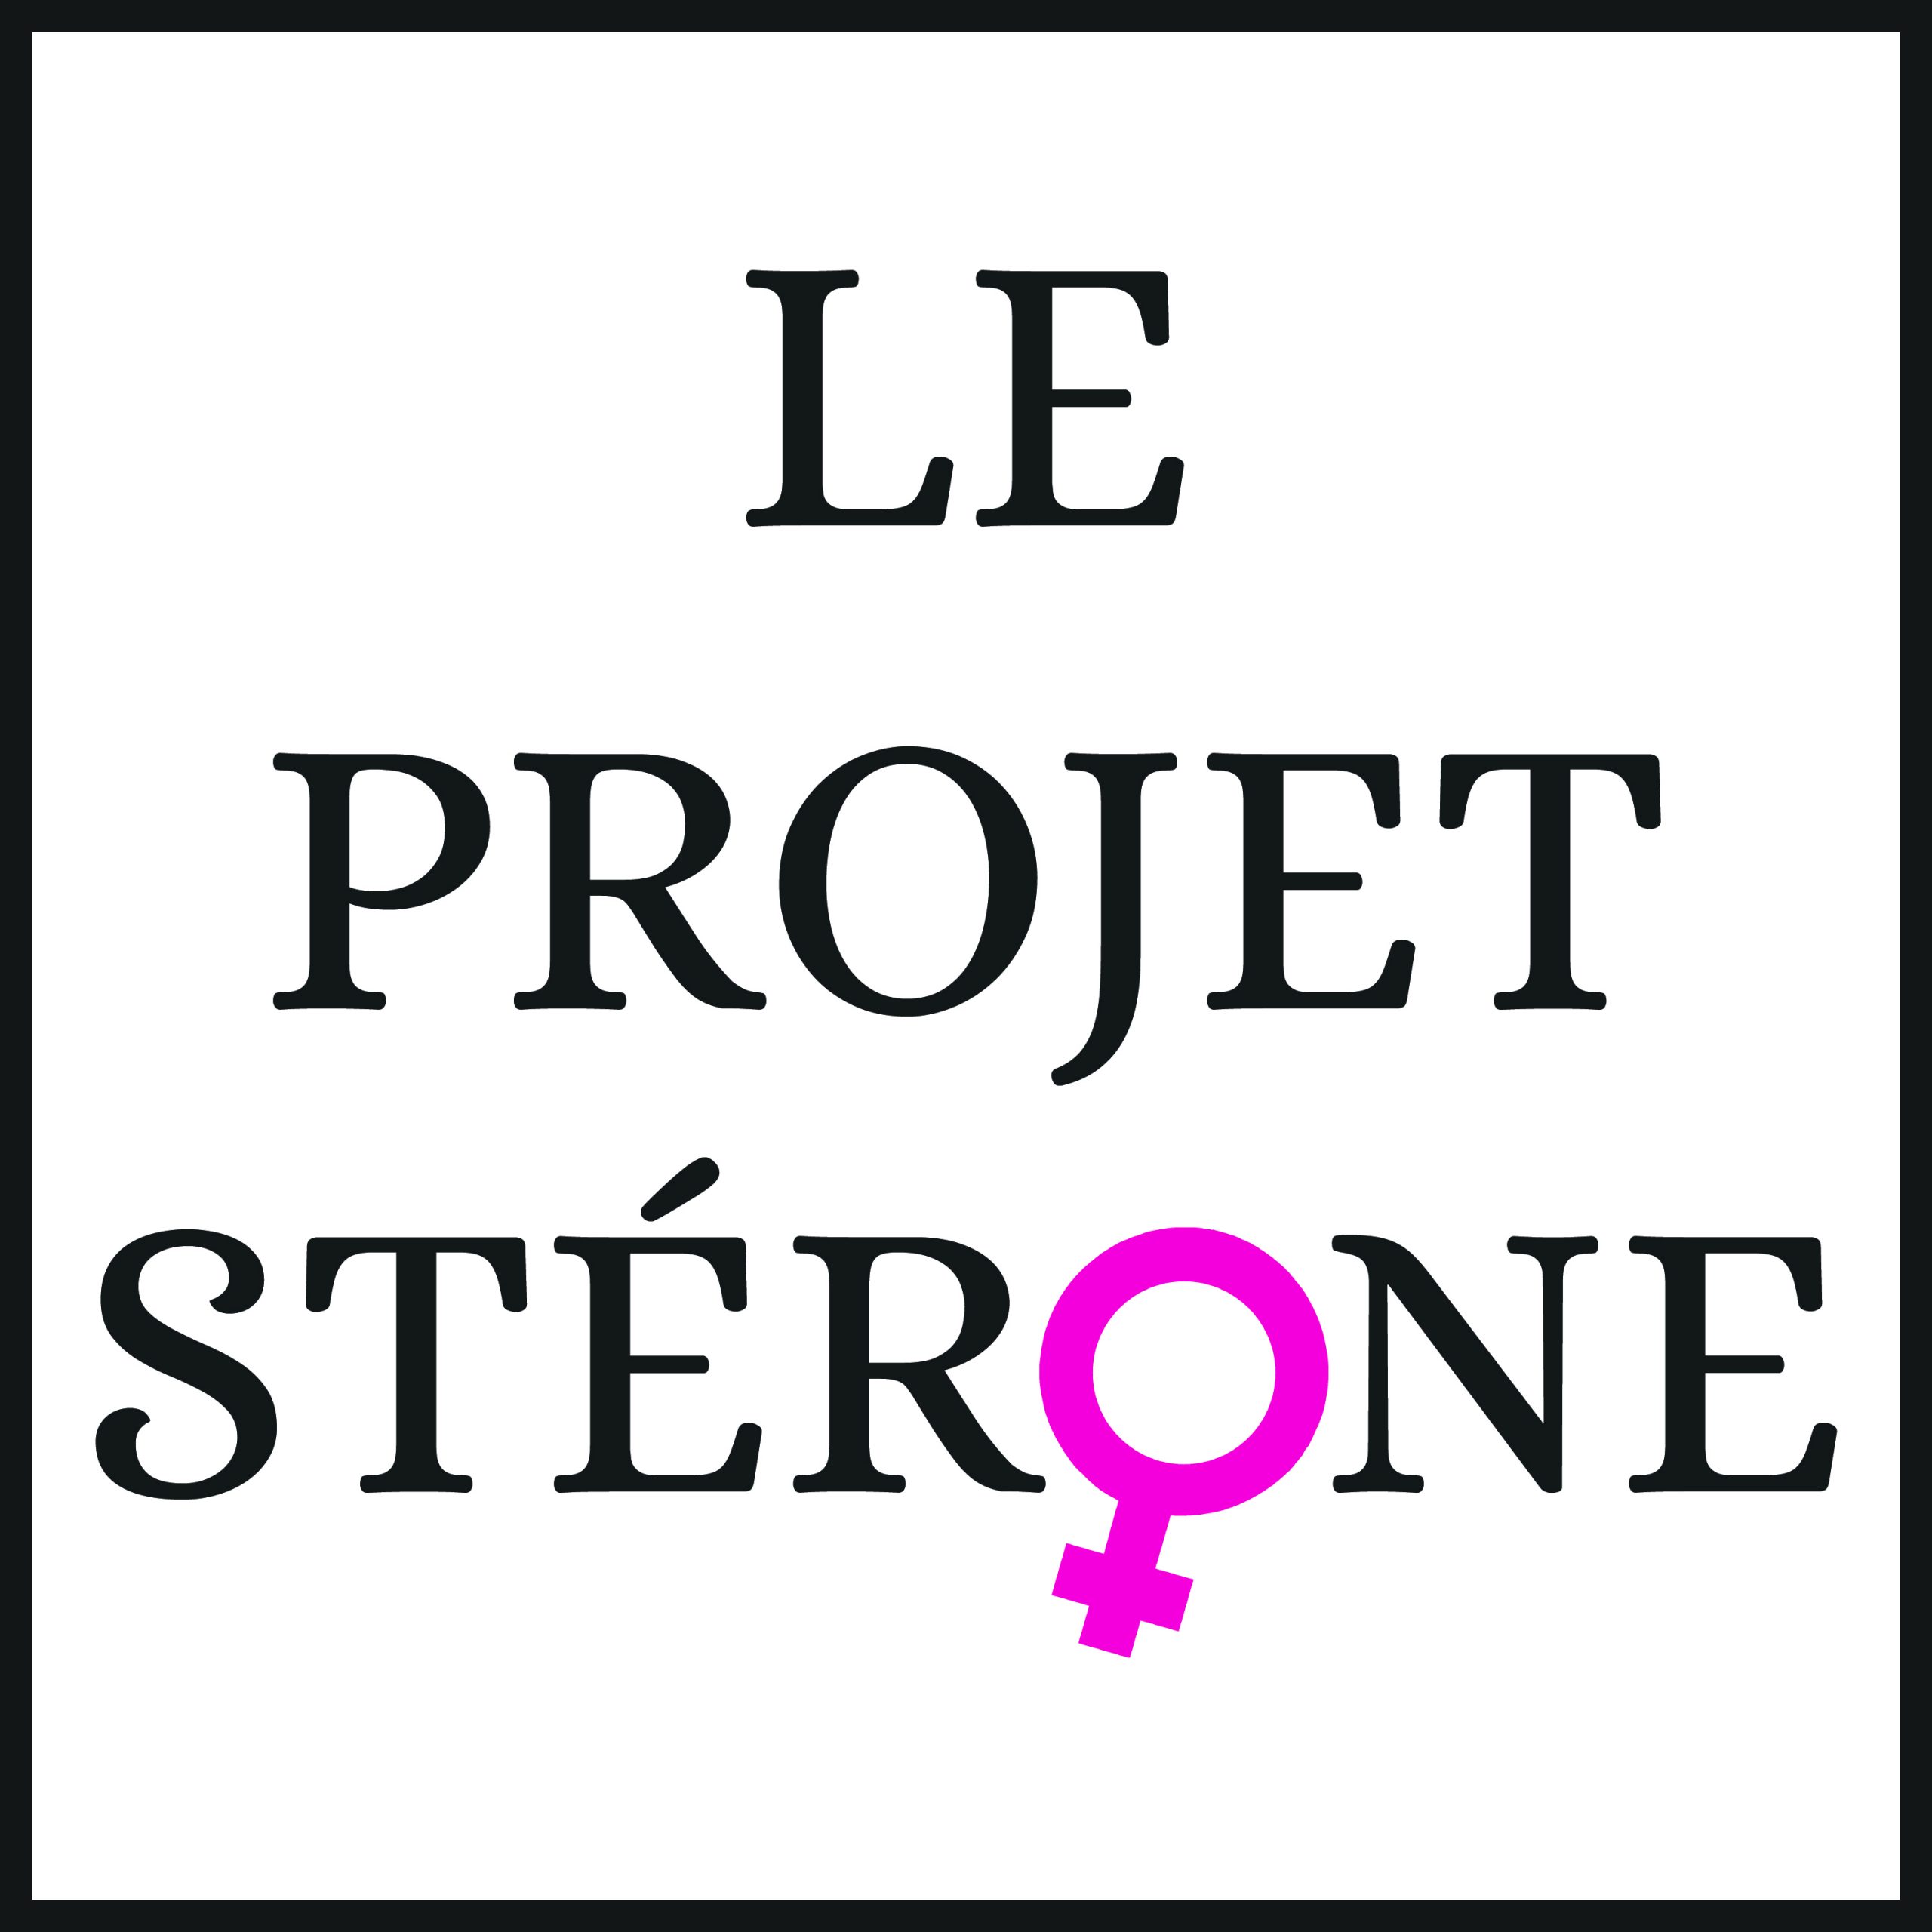 Le Projet Stérone - Logo Officiel